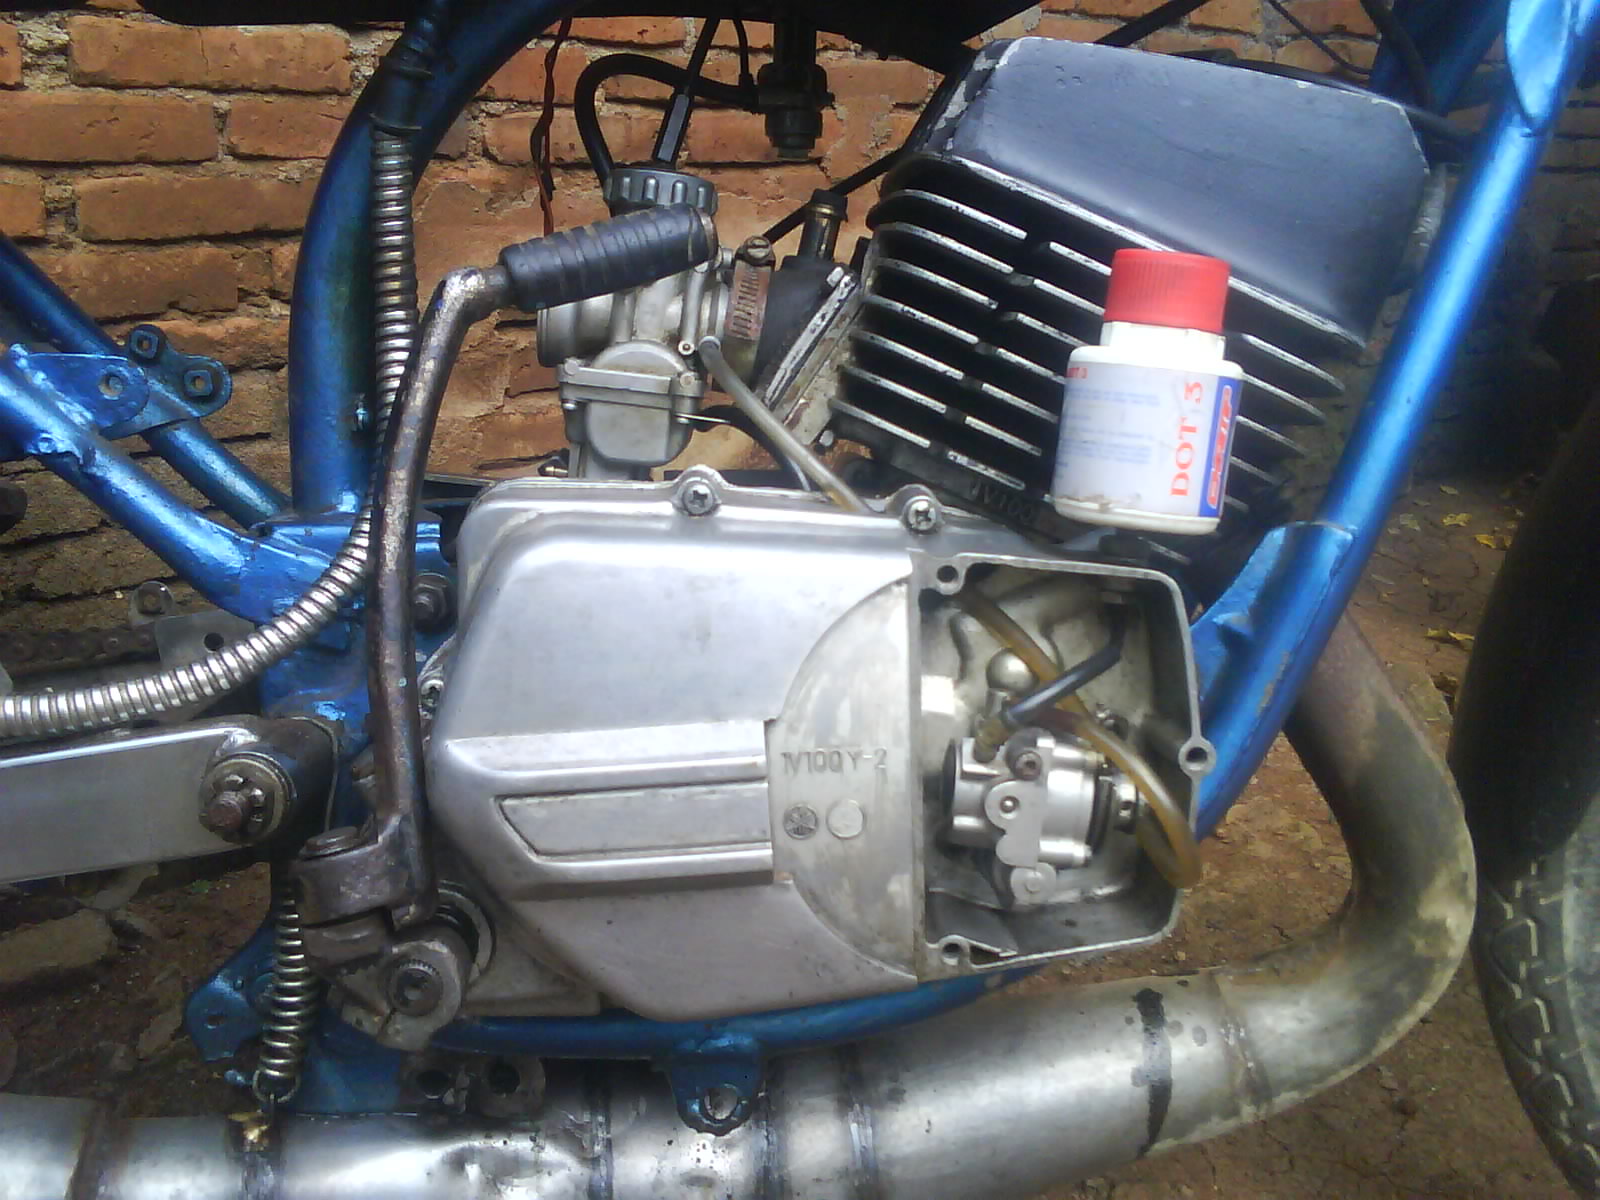 wallpaper rx king,auto part,vehicle,engine,fuel line,carburetor